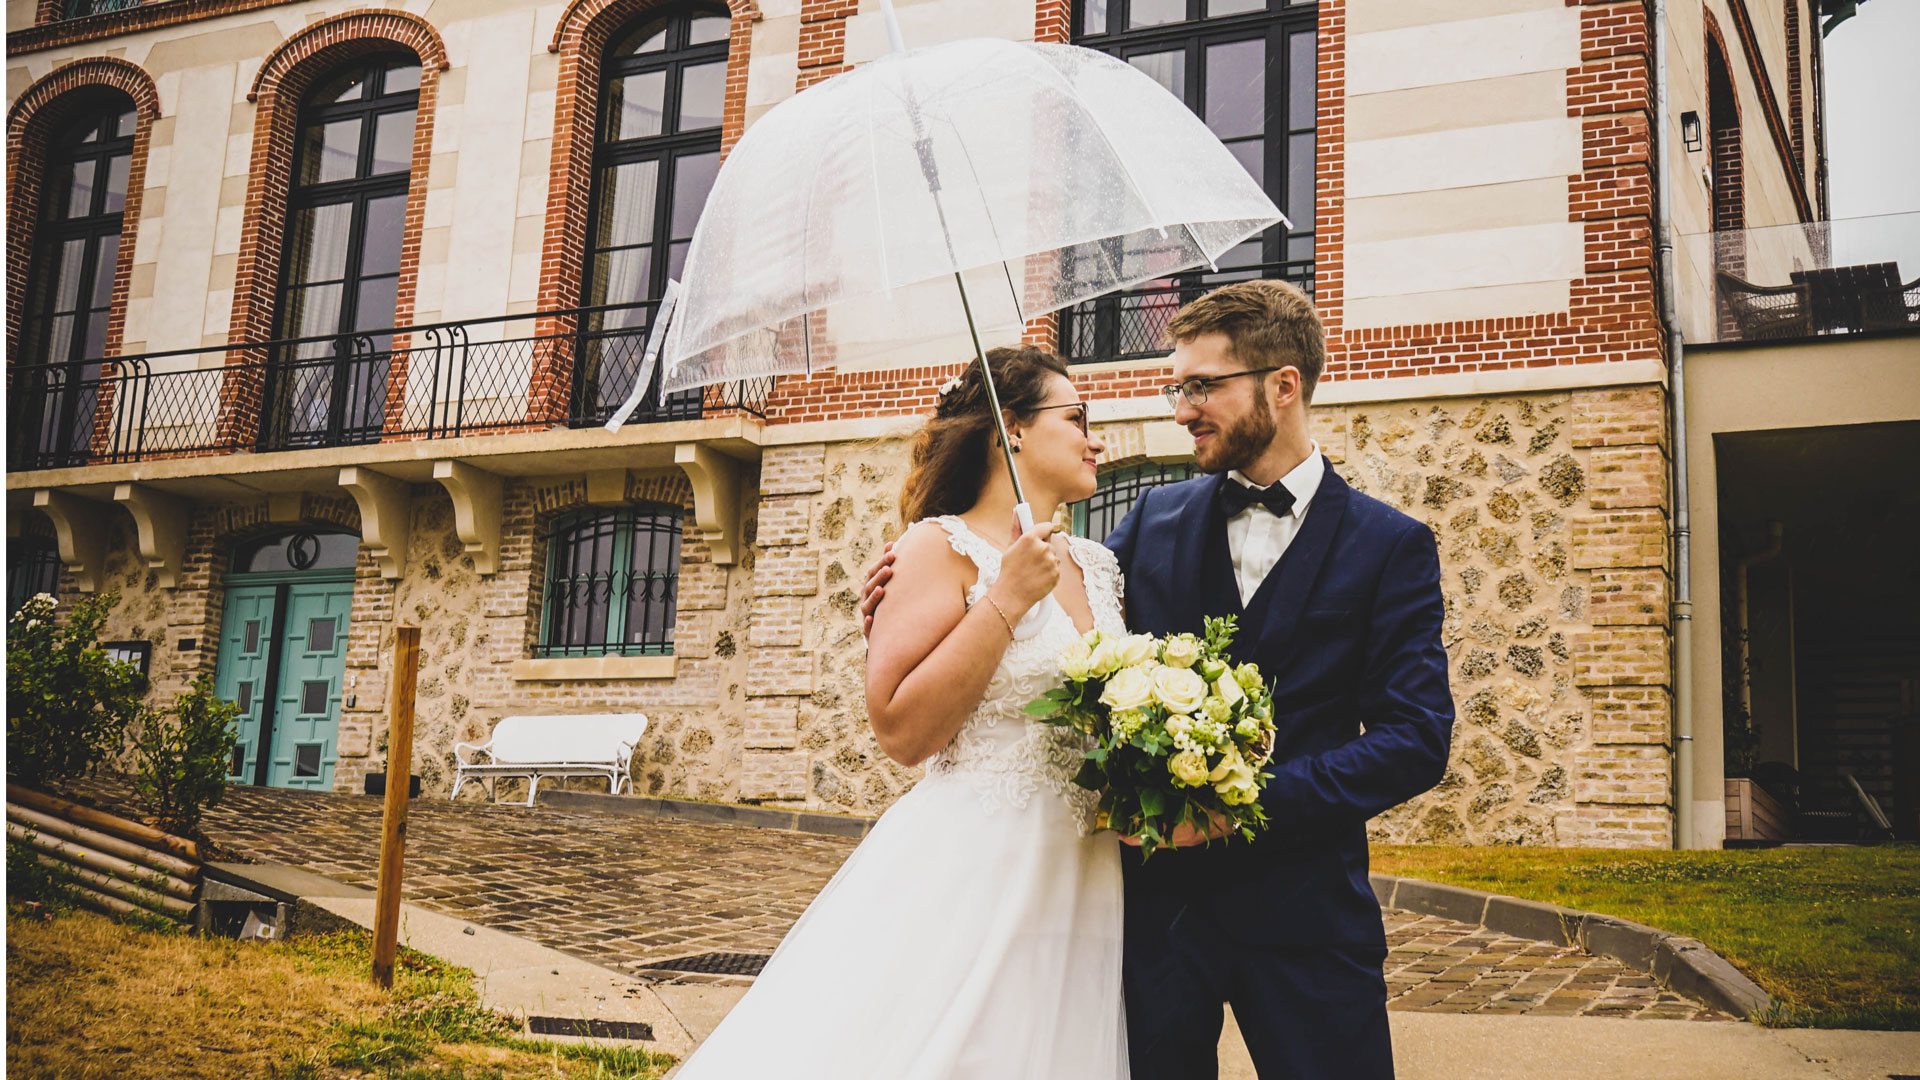 Les mariés sous la pluie avec un parapluie transparent. Perfect Moment by A Wedding planner Reims